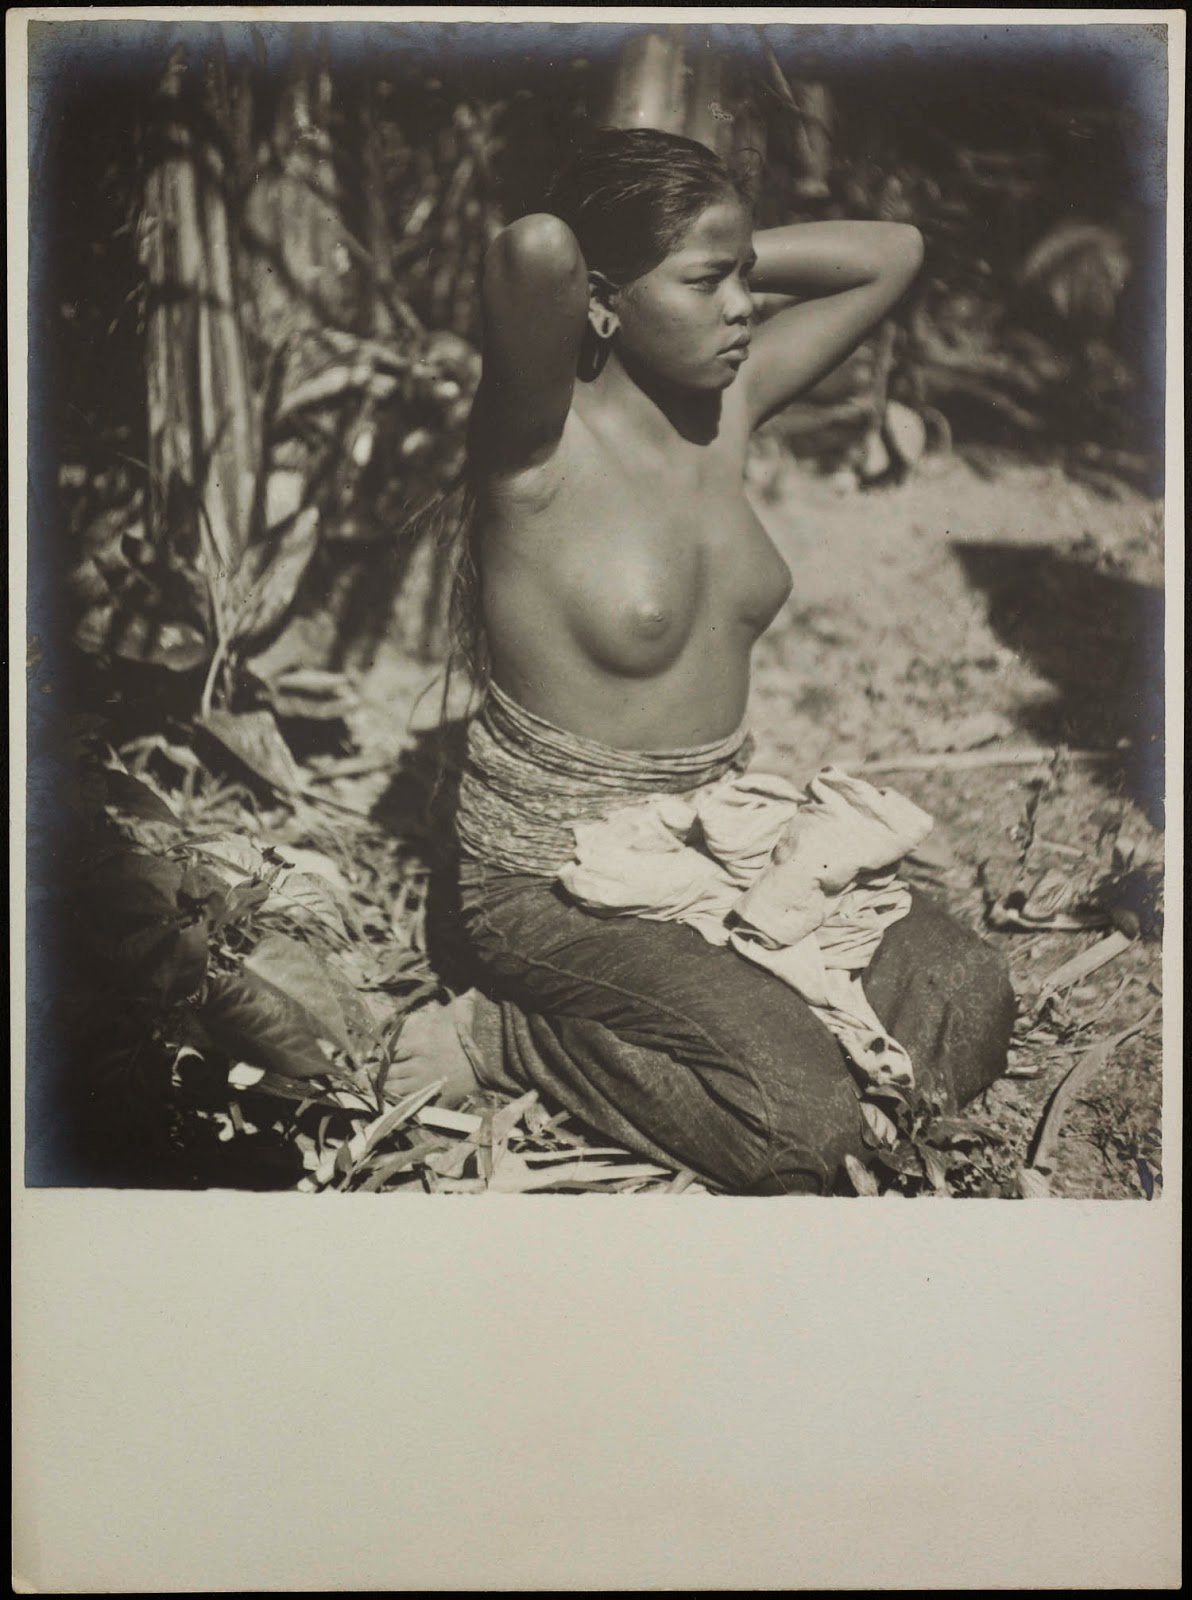 kumpulan-foto-gadis-bali-tempoe-doeloe-telanjang-dada-tahun-1910-1930-balinese-topless-girls-vintage-photography-32